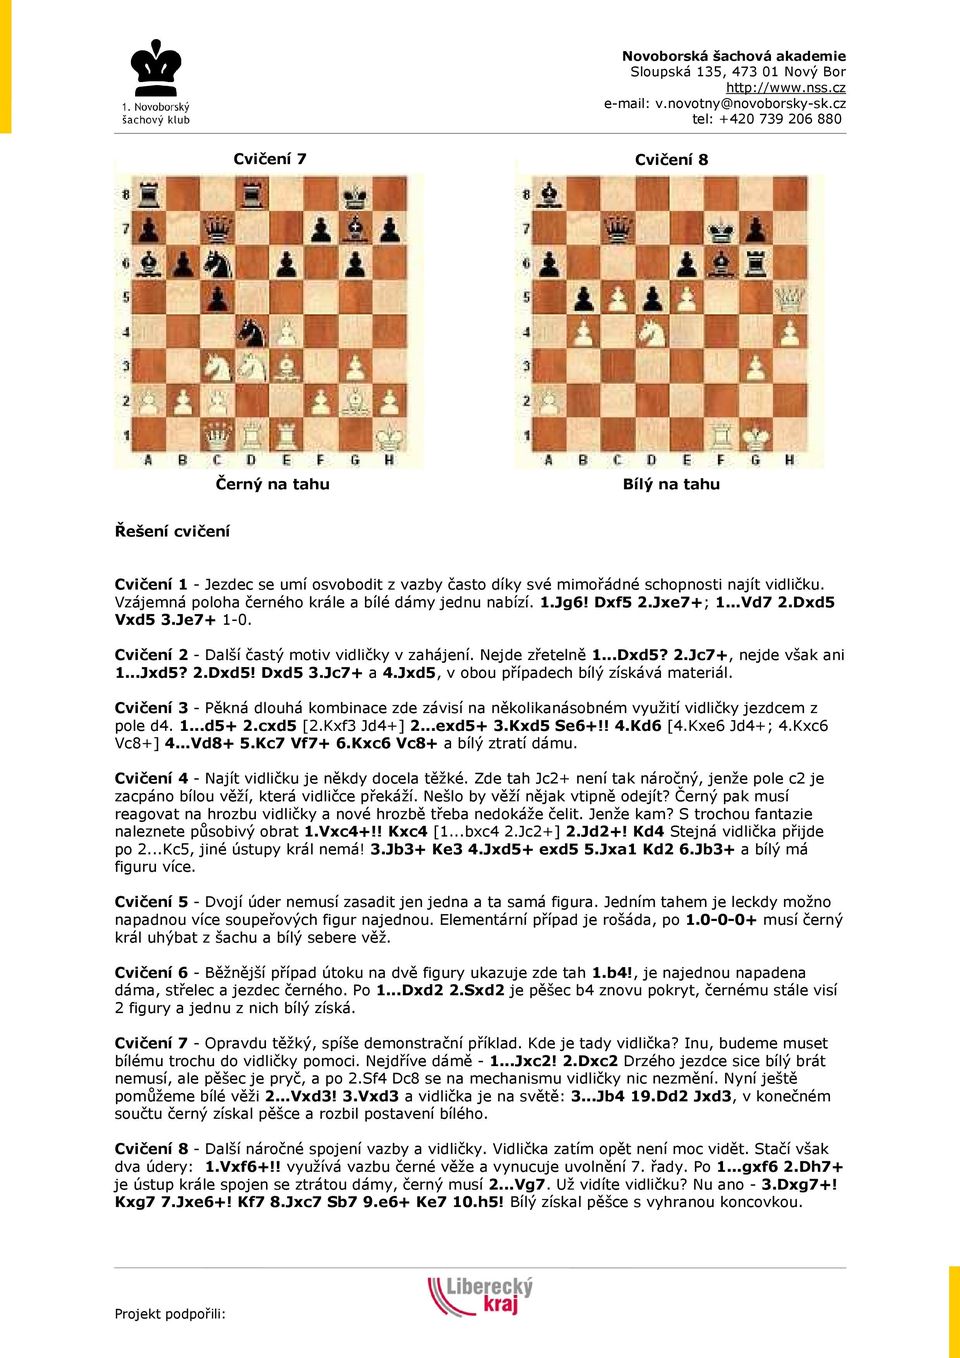 Jxd5, v obou případech bílý získává materiál. Cvičení 3 - Pěkná dlouhá kombinace zde závisí na několikanásobném využití vidličky jezdcem z pole d4. 1...d5+ 2.cxd5 [2.Kxf3 Jd4+] 2...exd5+ 3.Kxd5 Se6+!